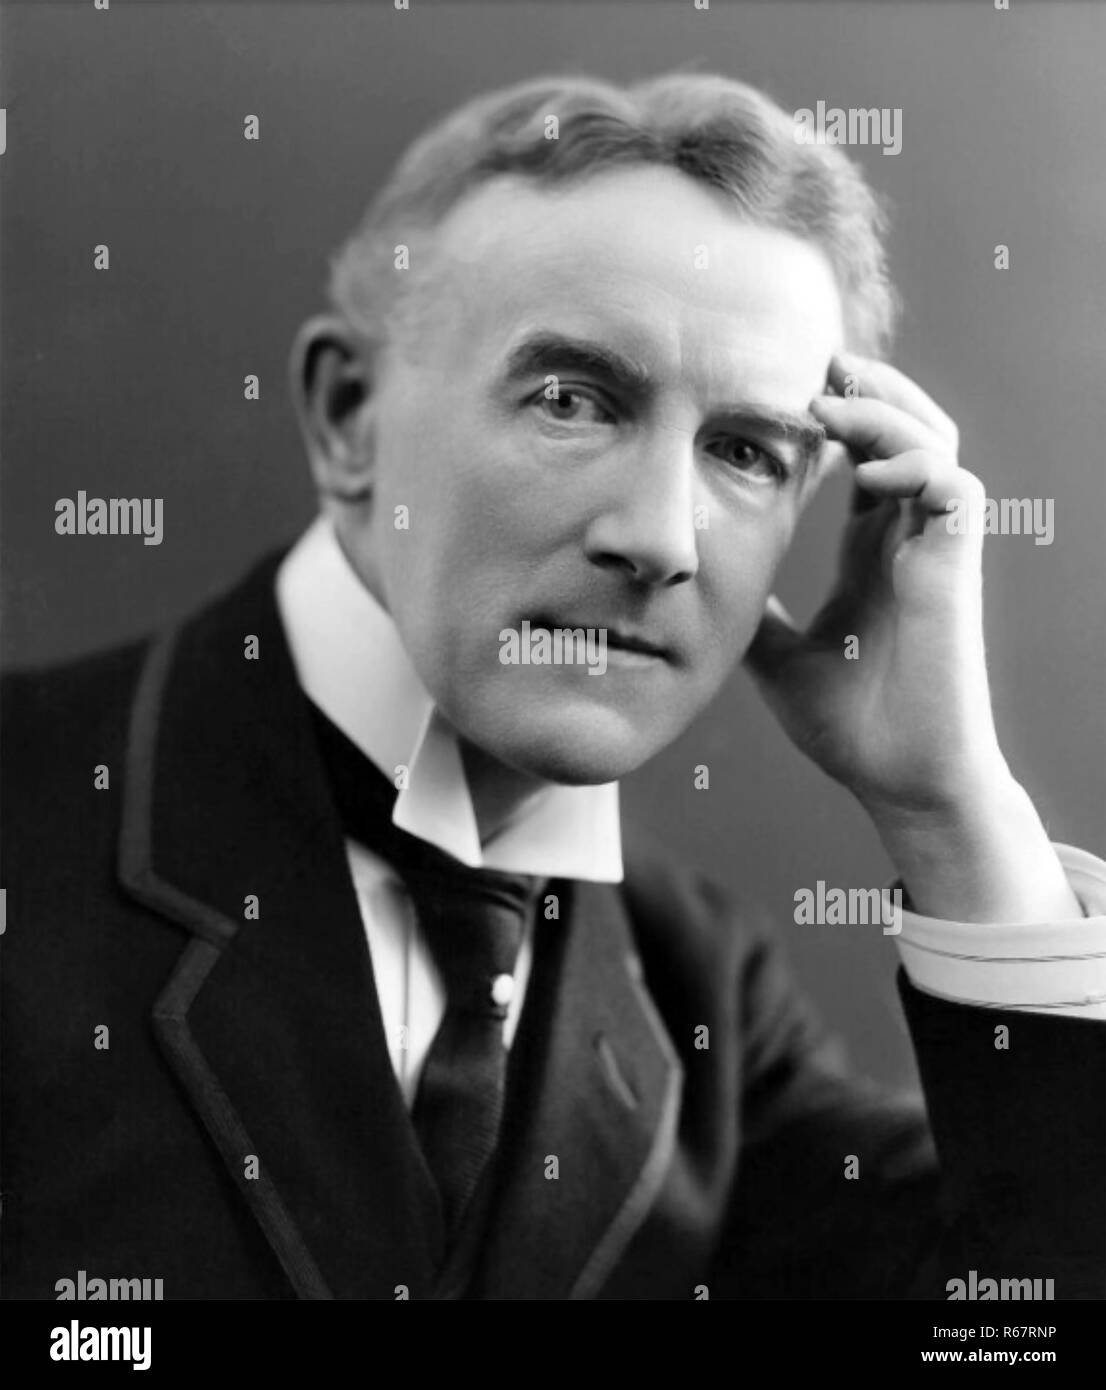 EDWARD GERMAN (1863-1936), englischer Musiker und Komponist von Opern. Foto: Bassano Studios Stockfoto